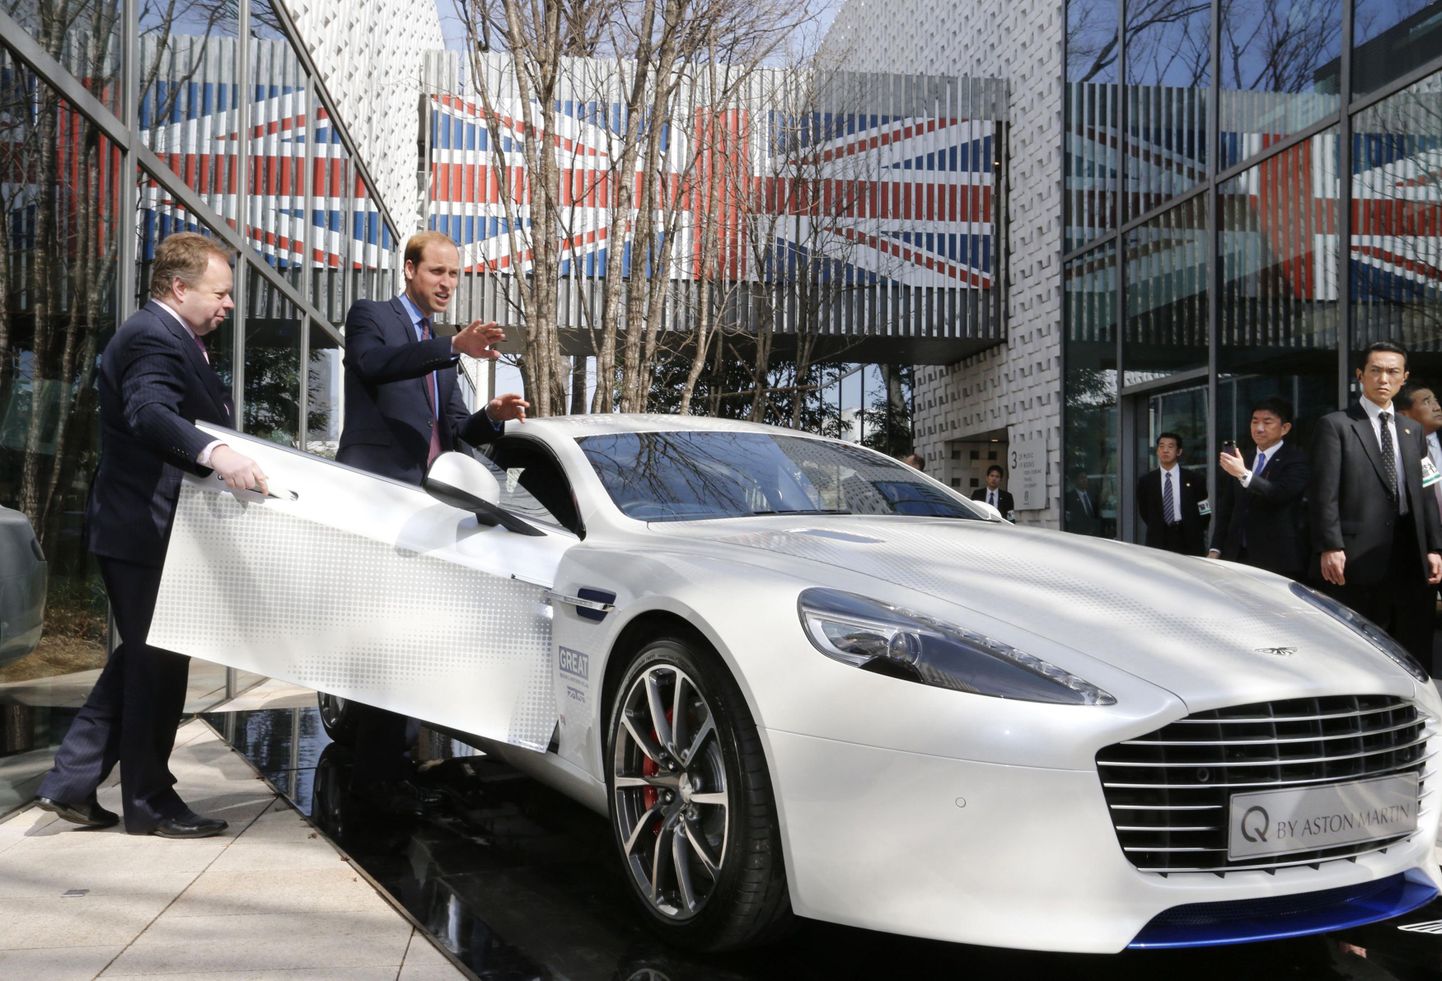 Aston Martin noori püüdmas: tegevjuht Andy Palmer avab uue Aston Martin Rapide S ukse prints Williamile.